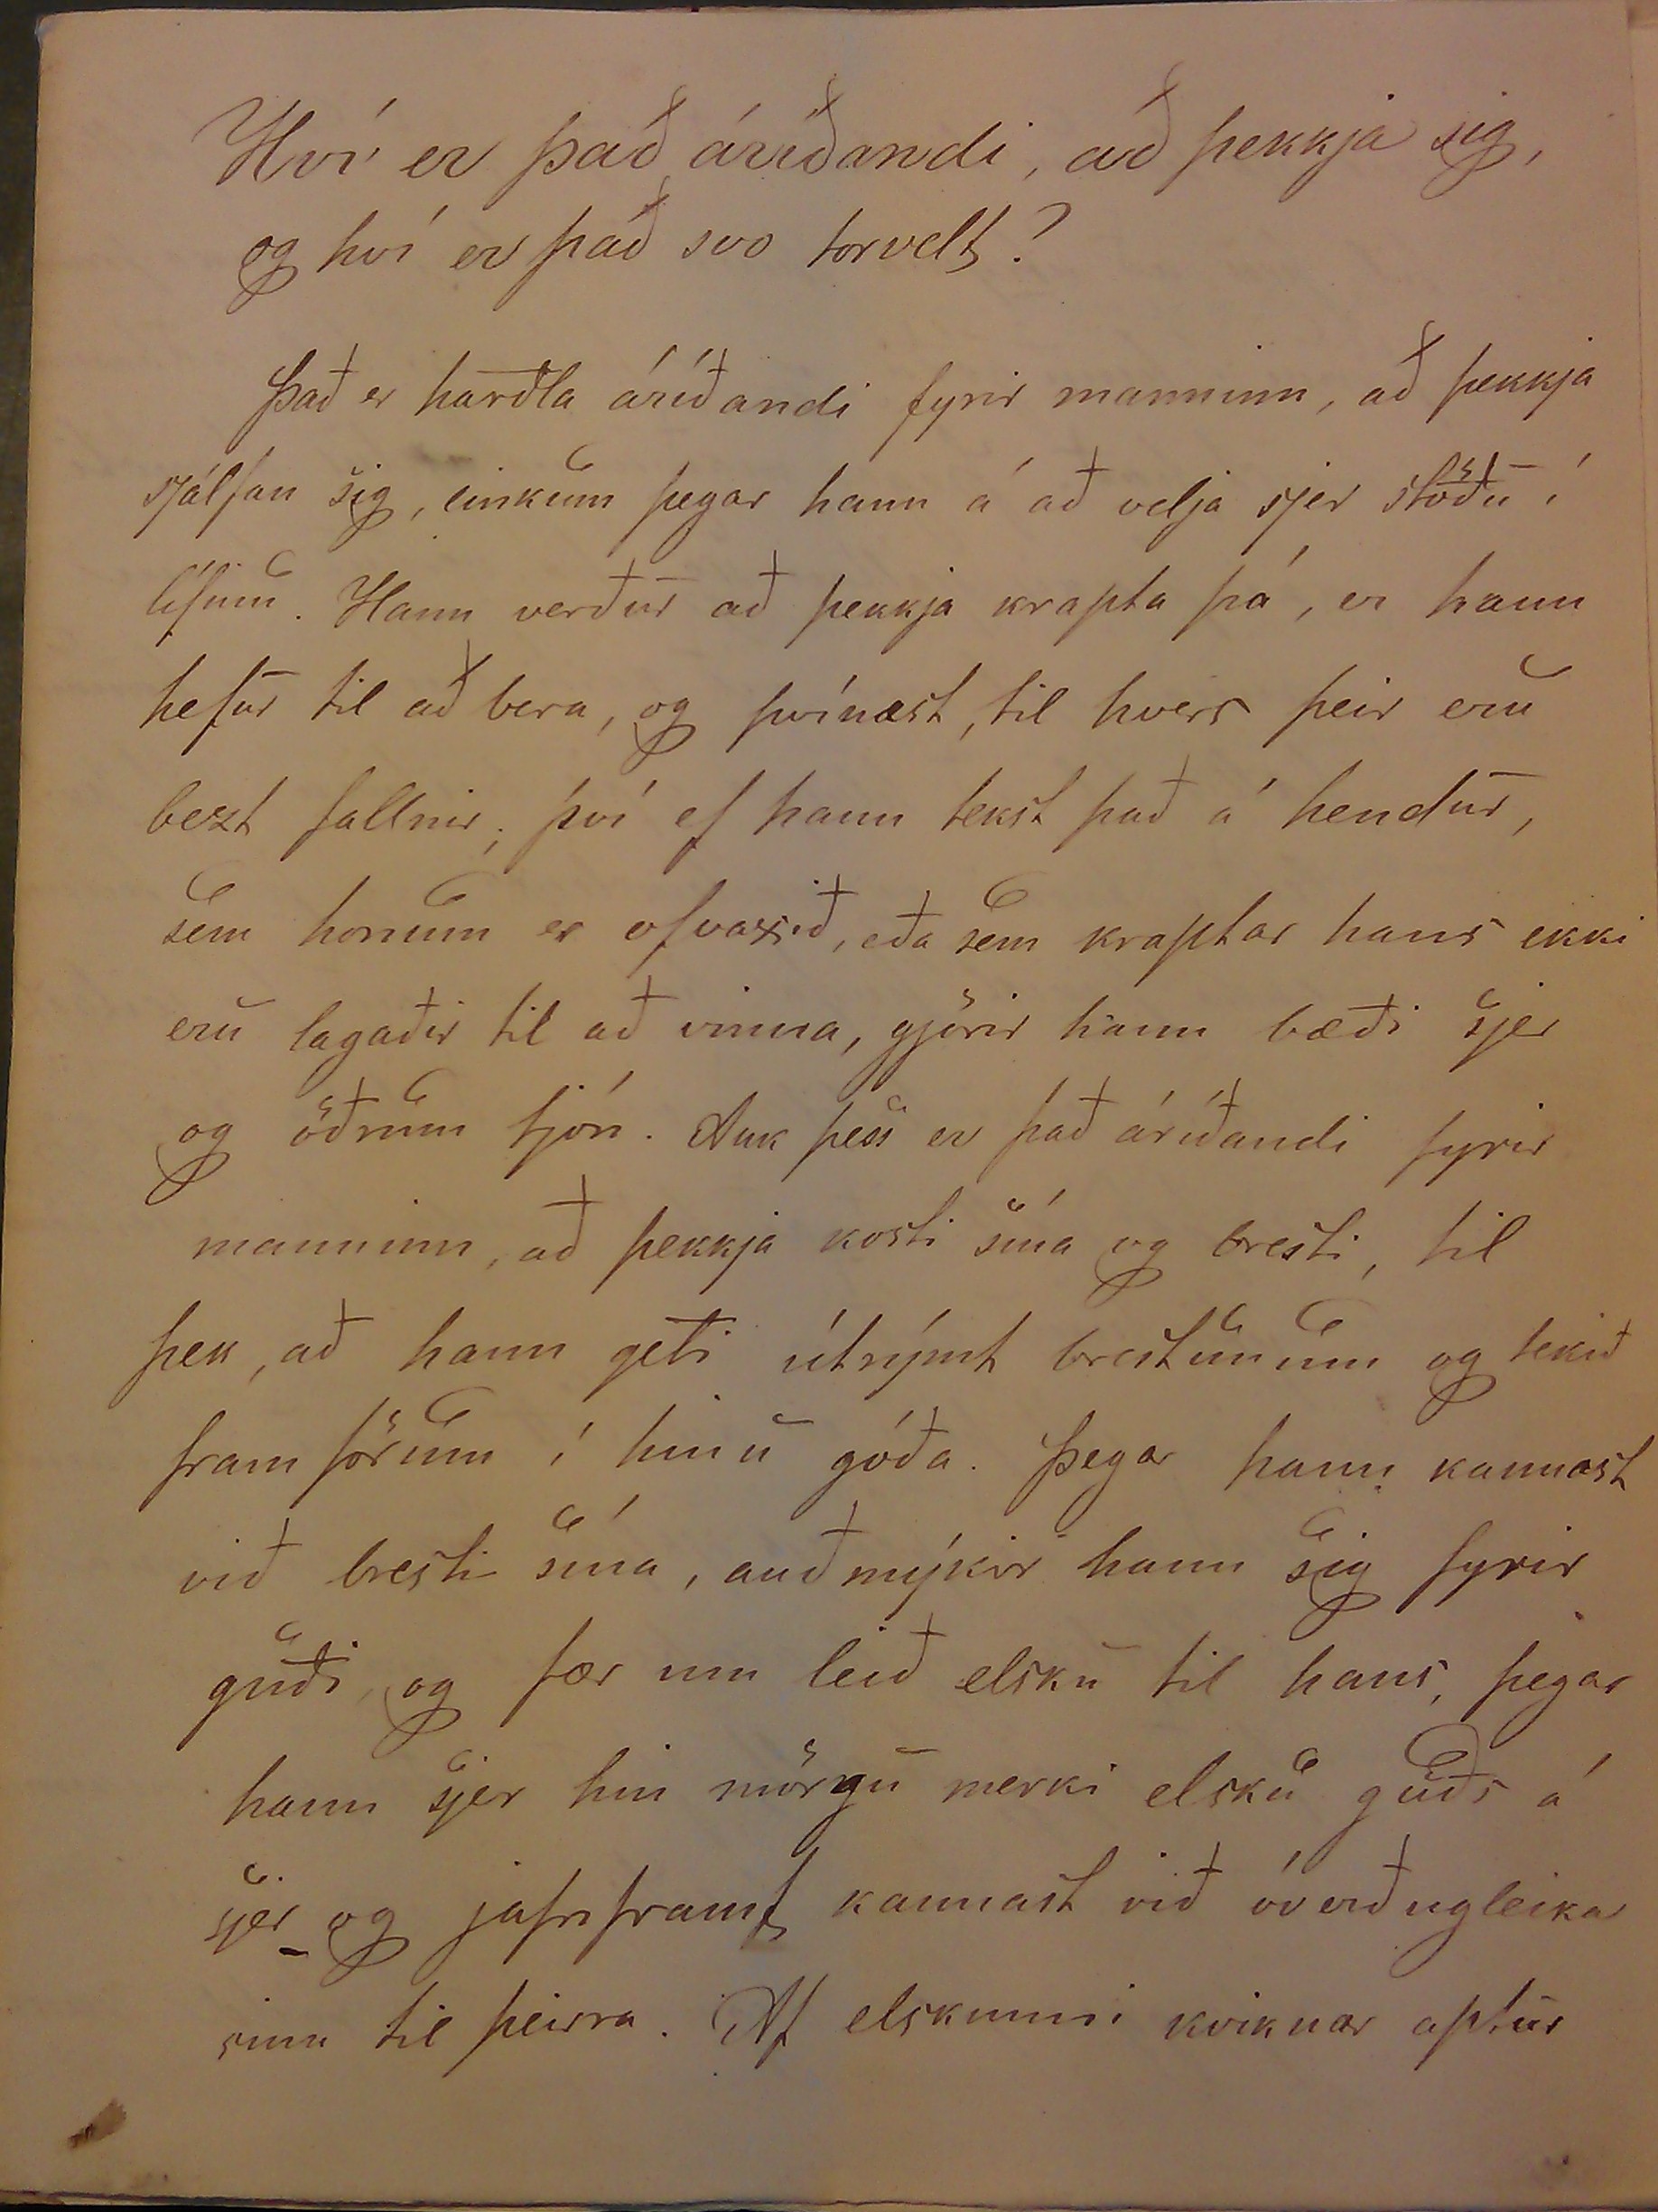 Skólastíll (1855)